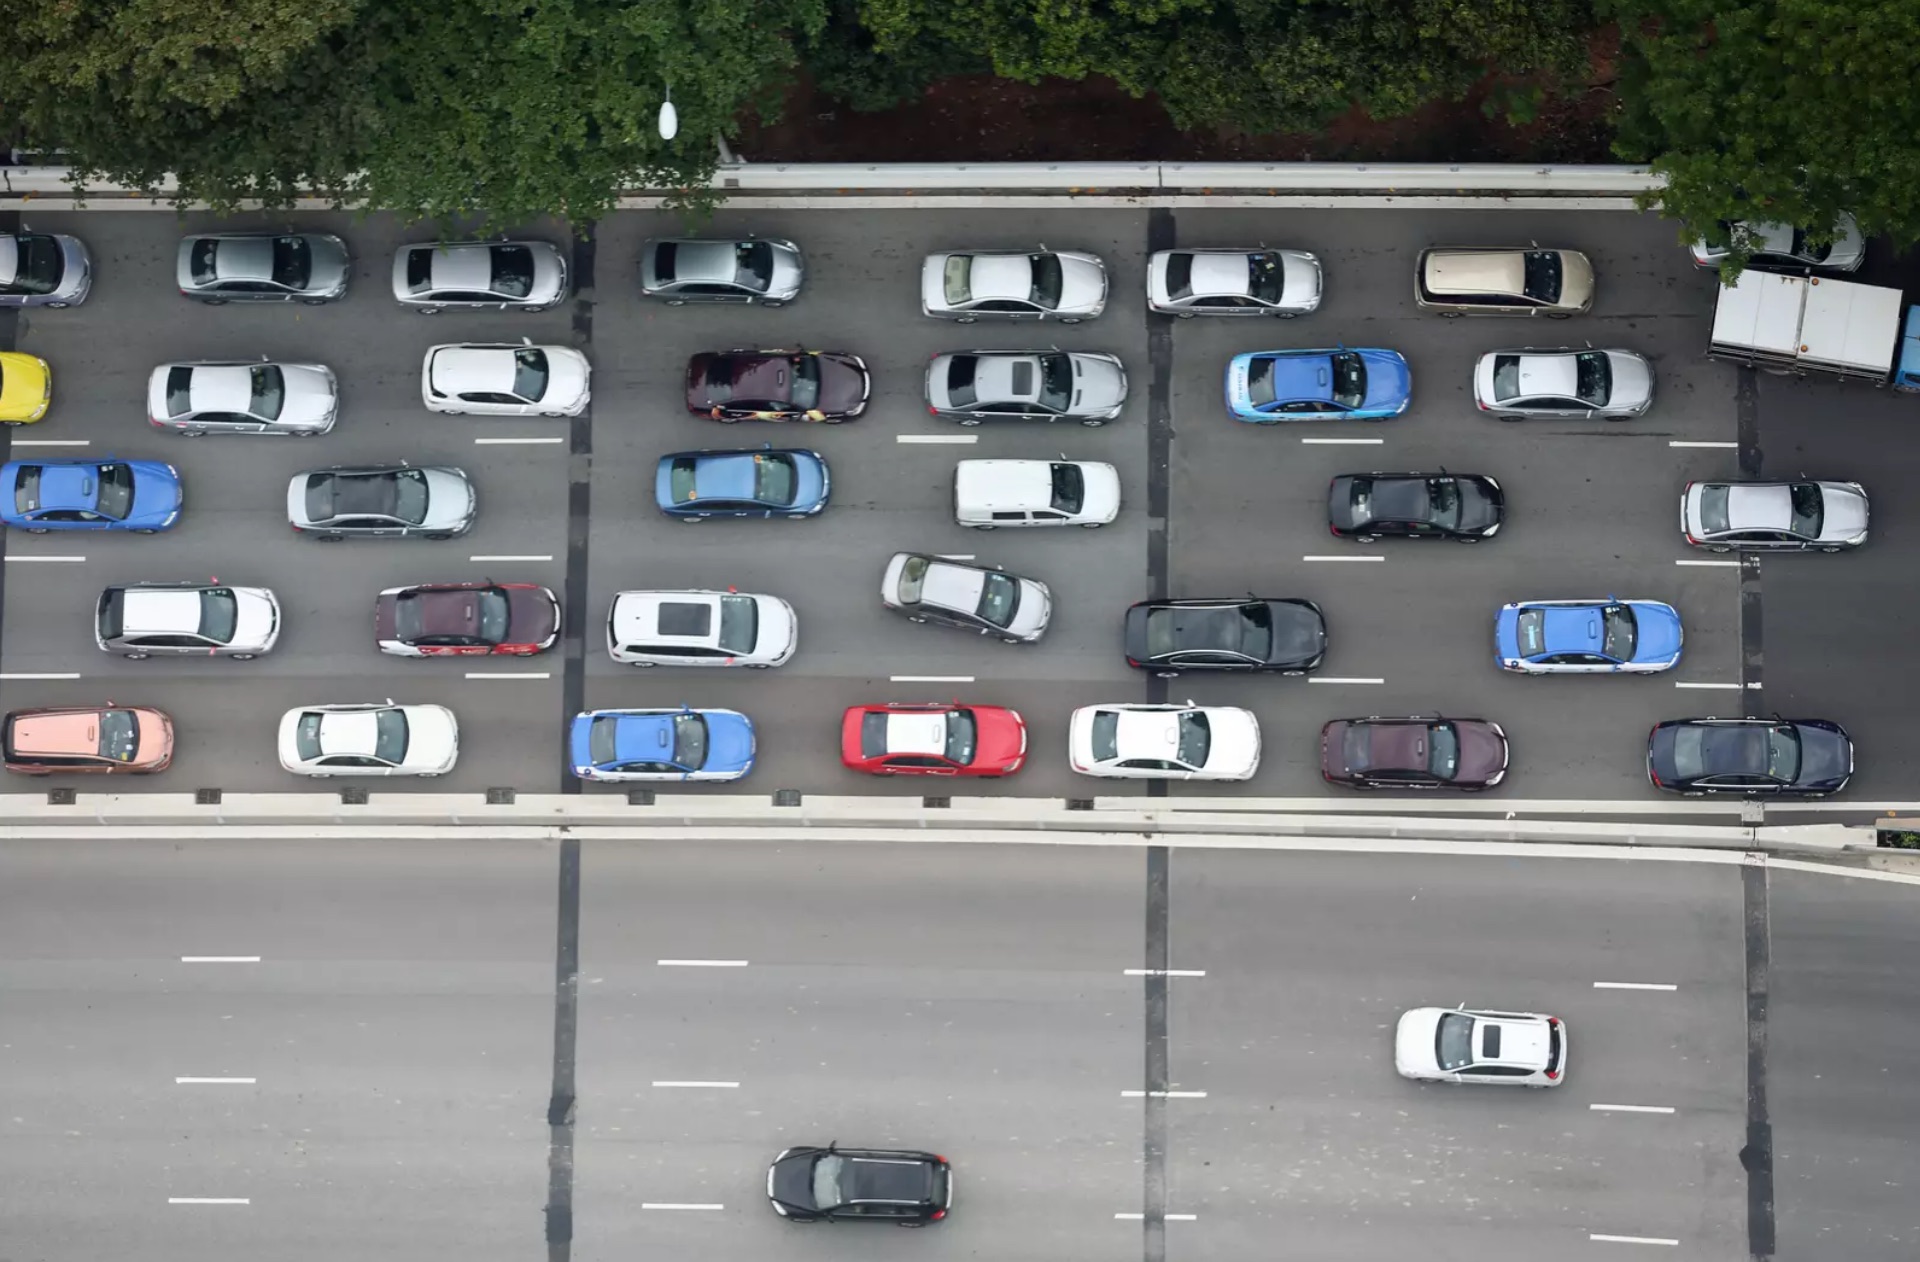 สิงคโปร์เล็งยกเลิกออกใบอนุญาตรถยนต์ใหม่ปีหน้า หวังแก้ไขปัญหาจราจร-อัตรารถเพิ่ม 0%